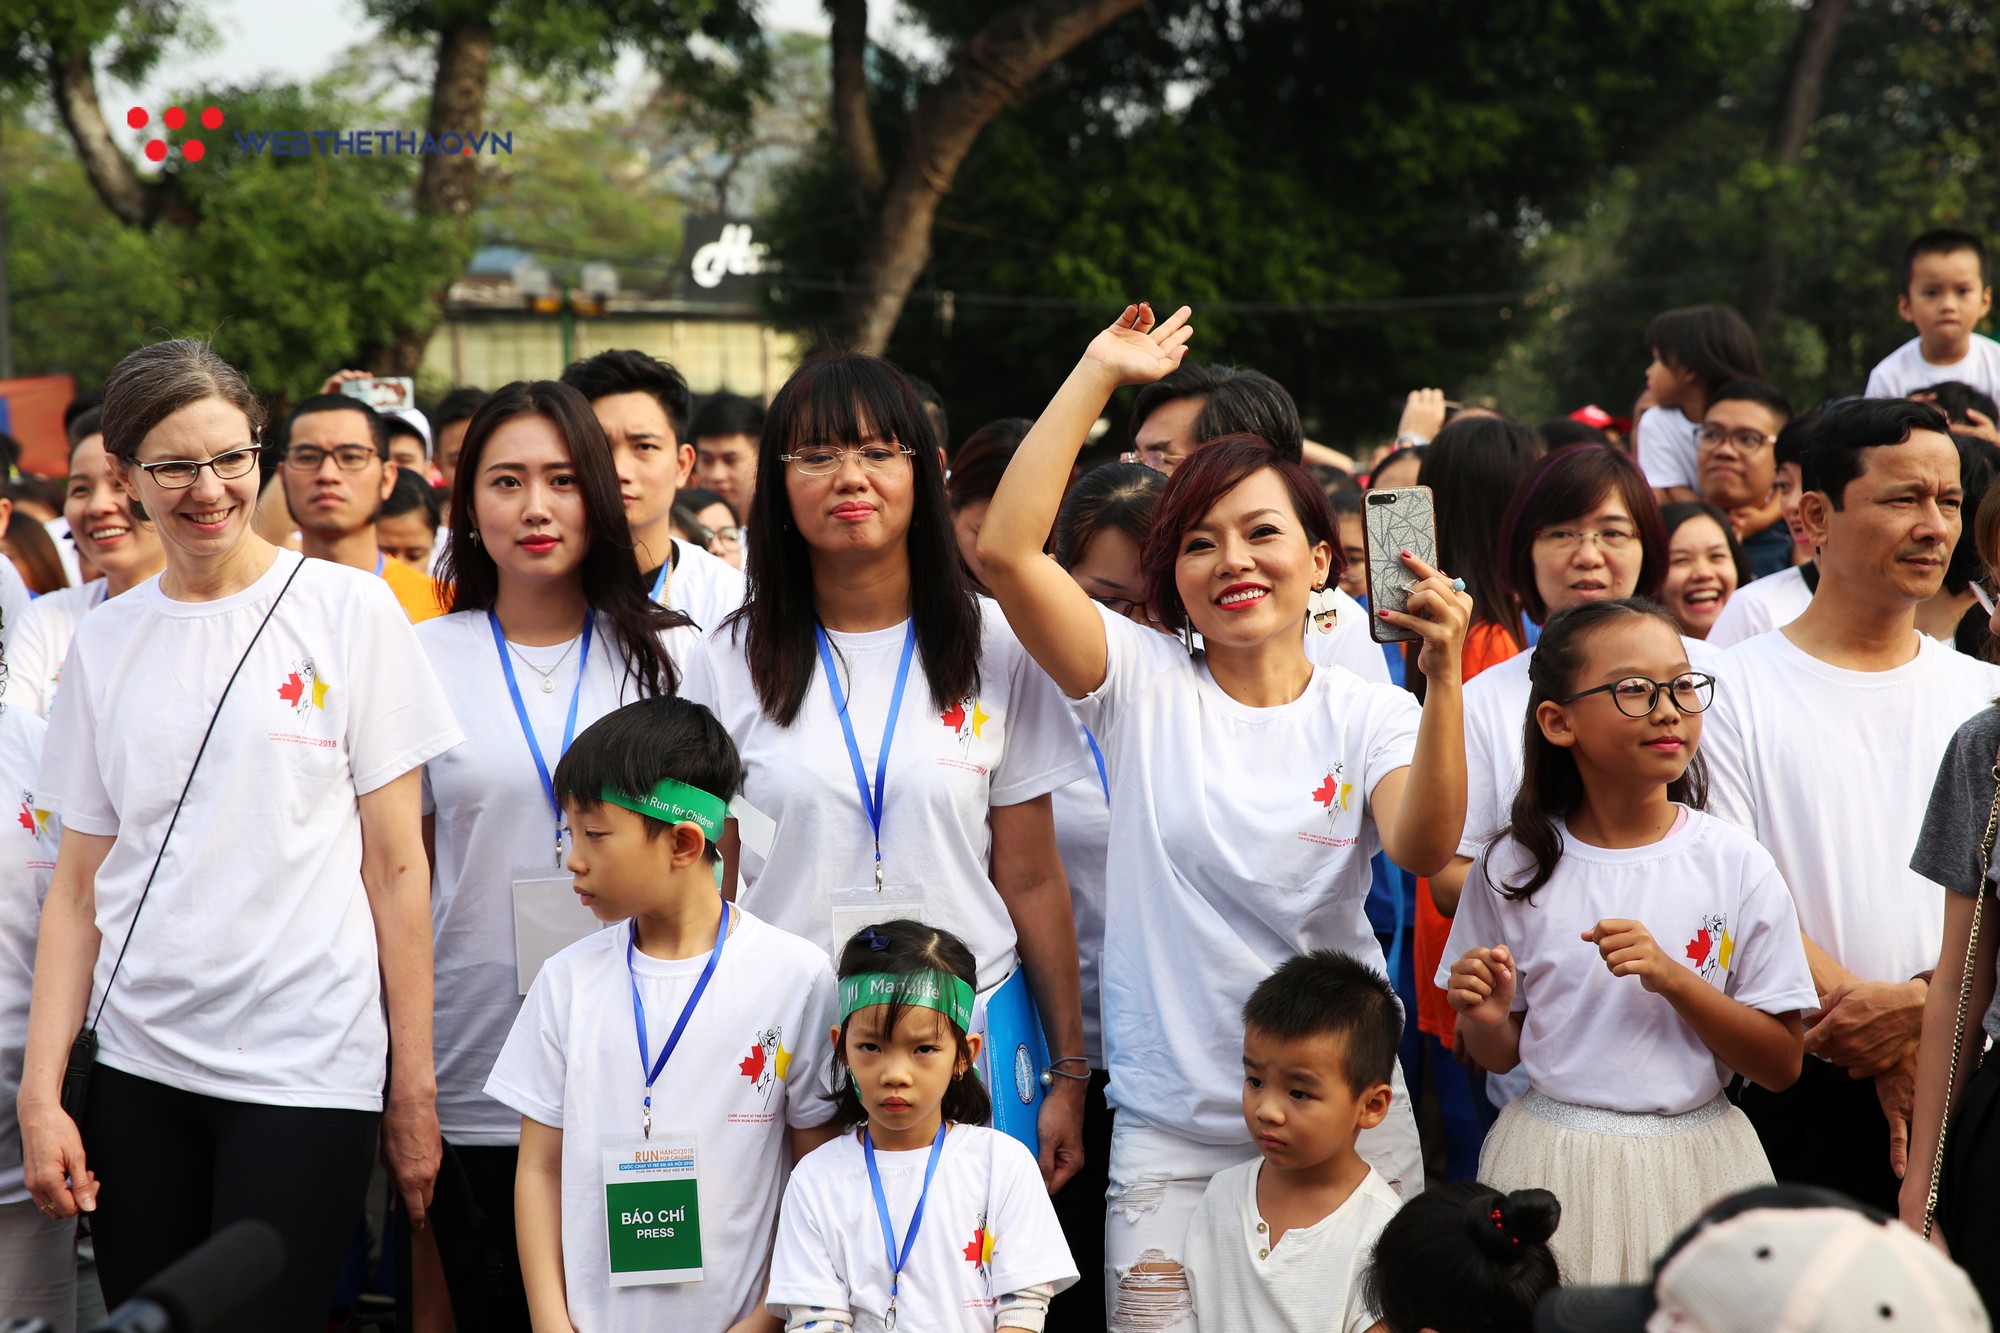 Ca sĩ Thái Thùy Linh, Đức Tuấn ‘quẩy’ nhiệt tình tại Chạy vì trẻ em Hà Nội 2018 - Ảnh 2.